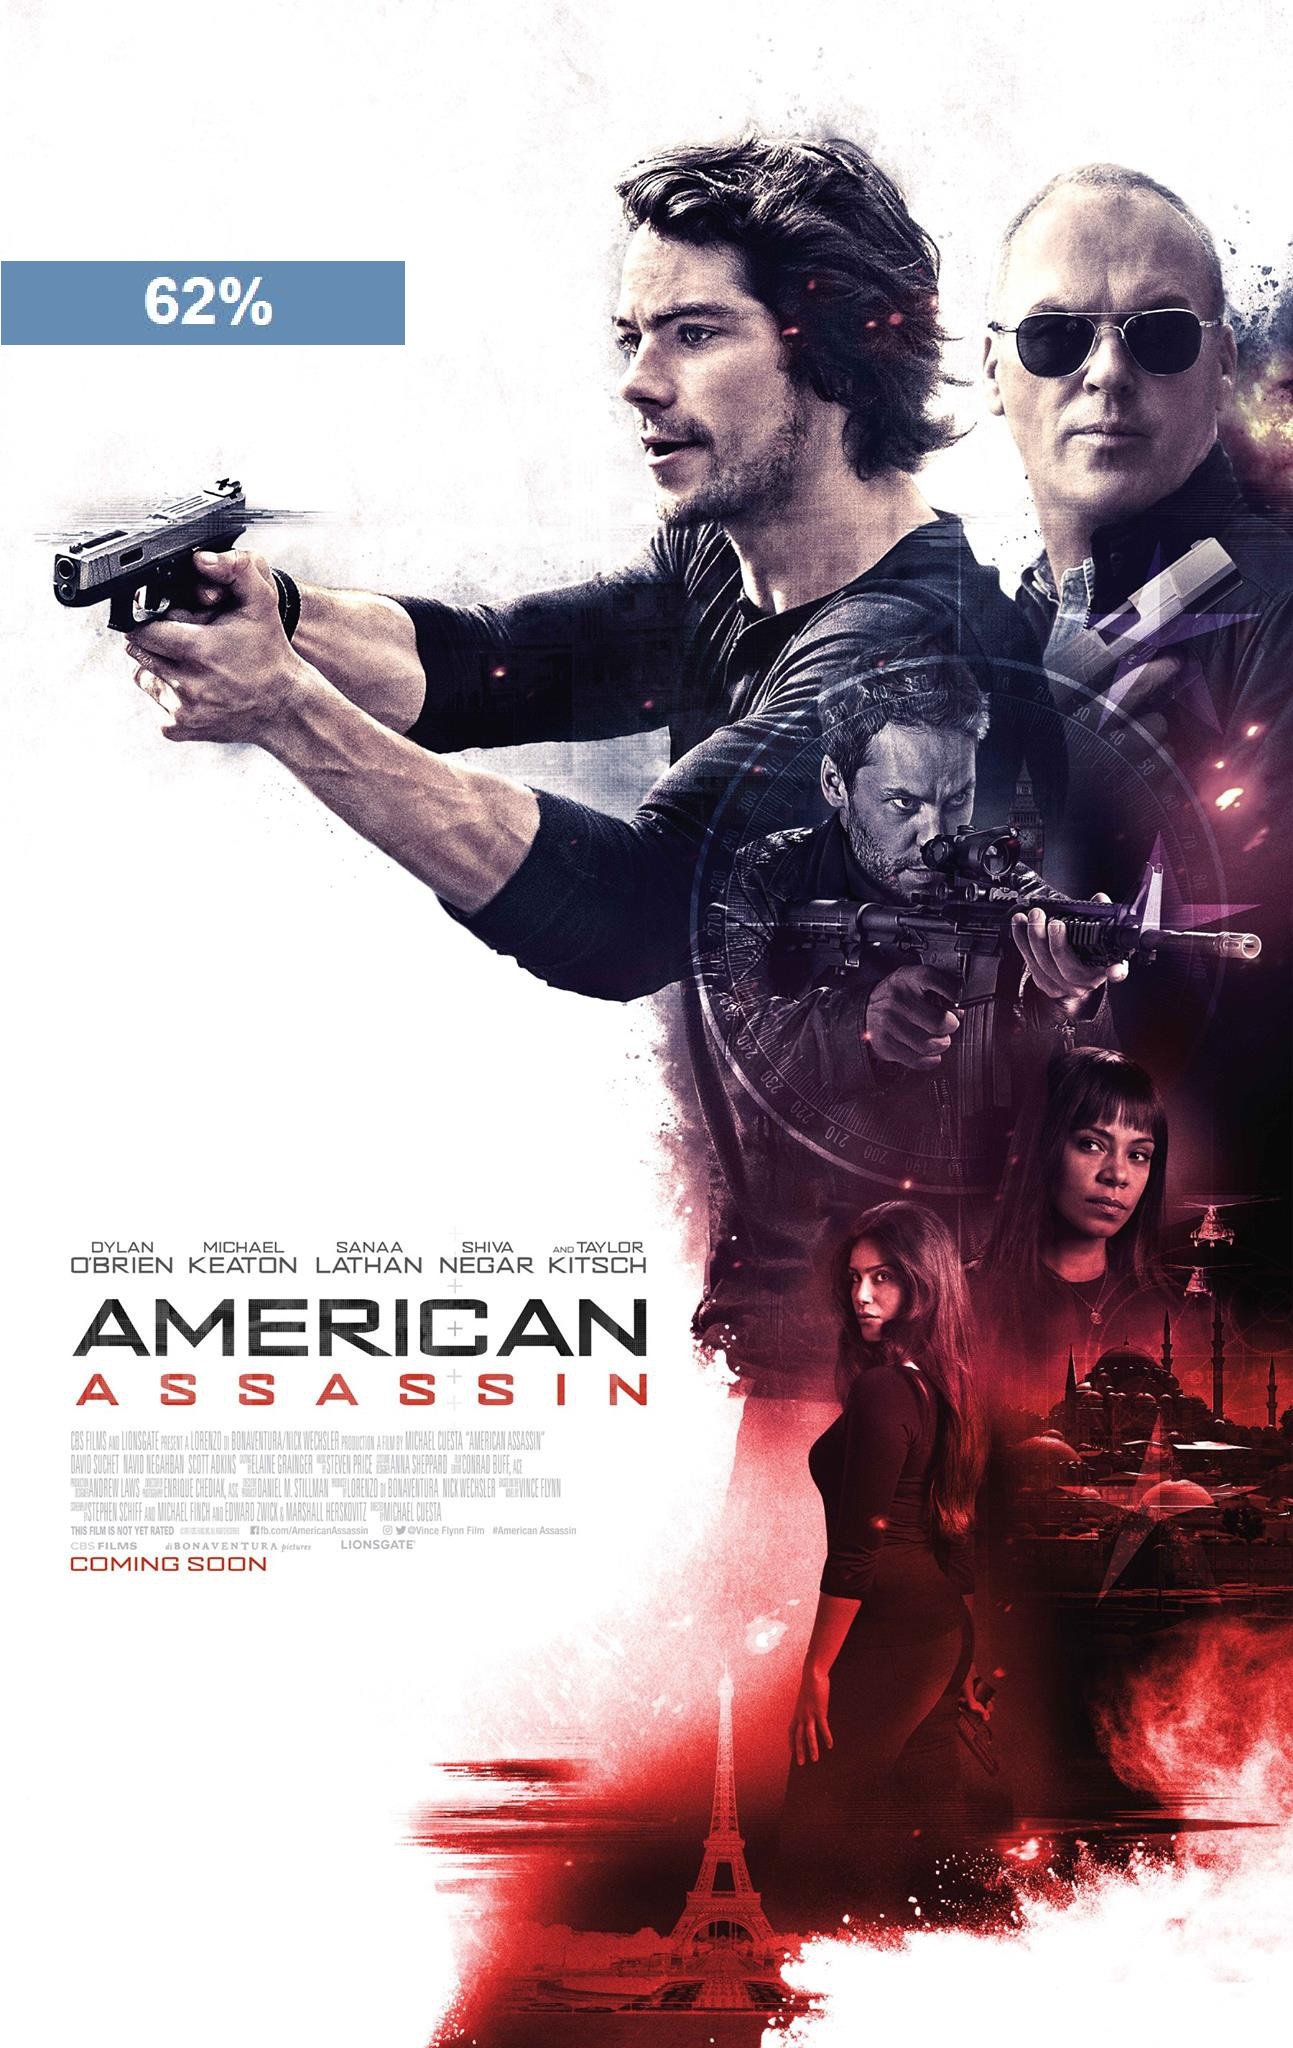 Stiahni si Filmy Kamera American Assassin (2017)  (HD-TS.XviD.EN)  = CSFD 62%